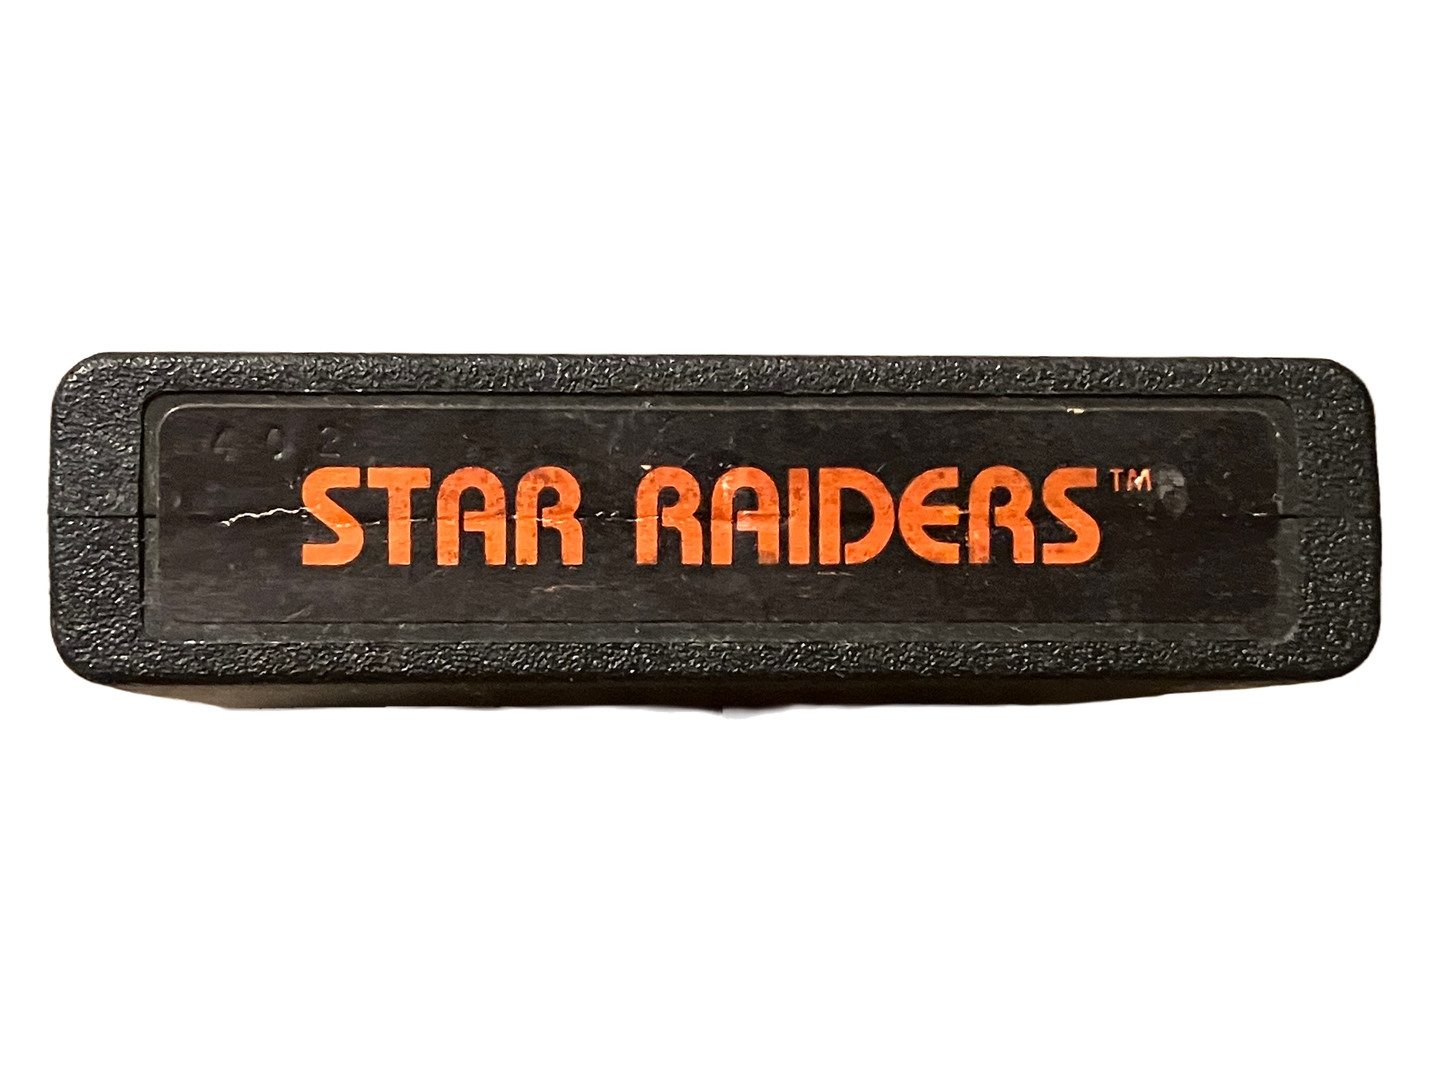 Star Raiders Atari 2600 Video Game